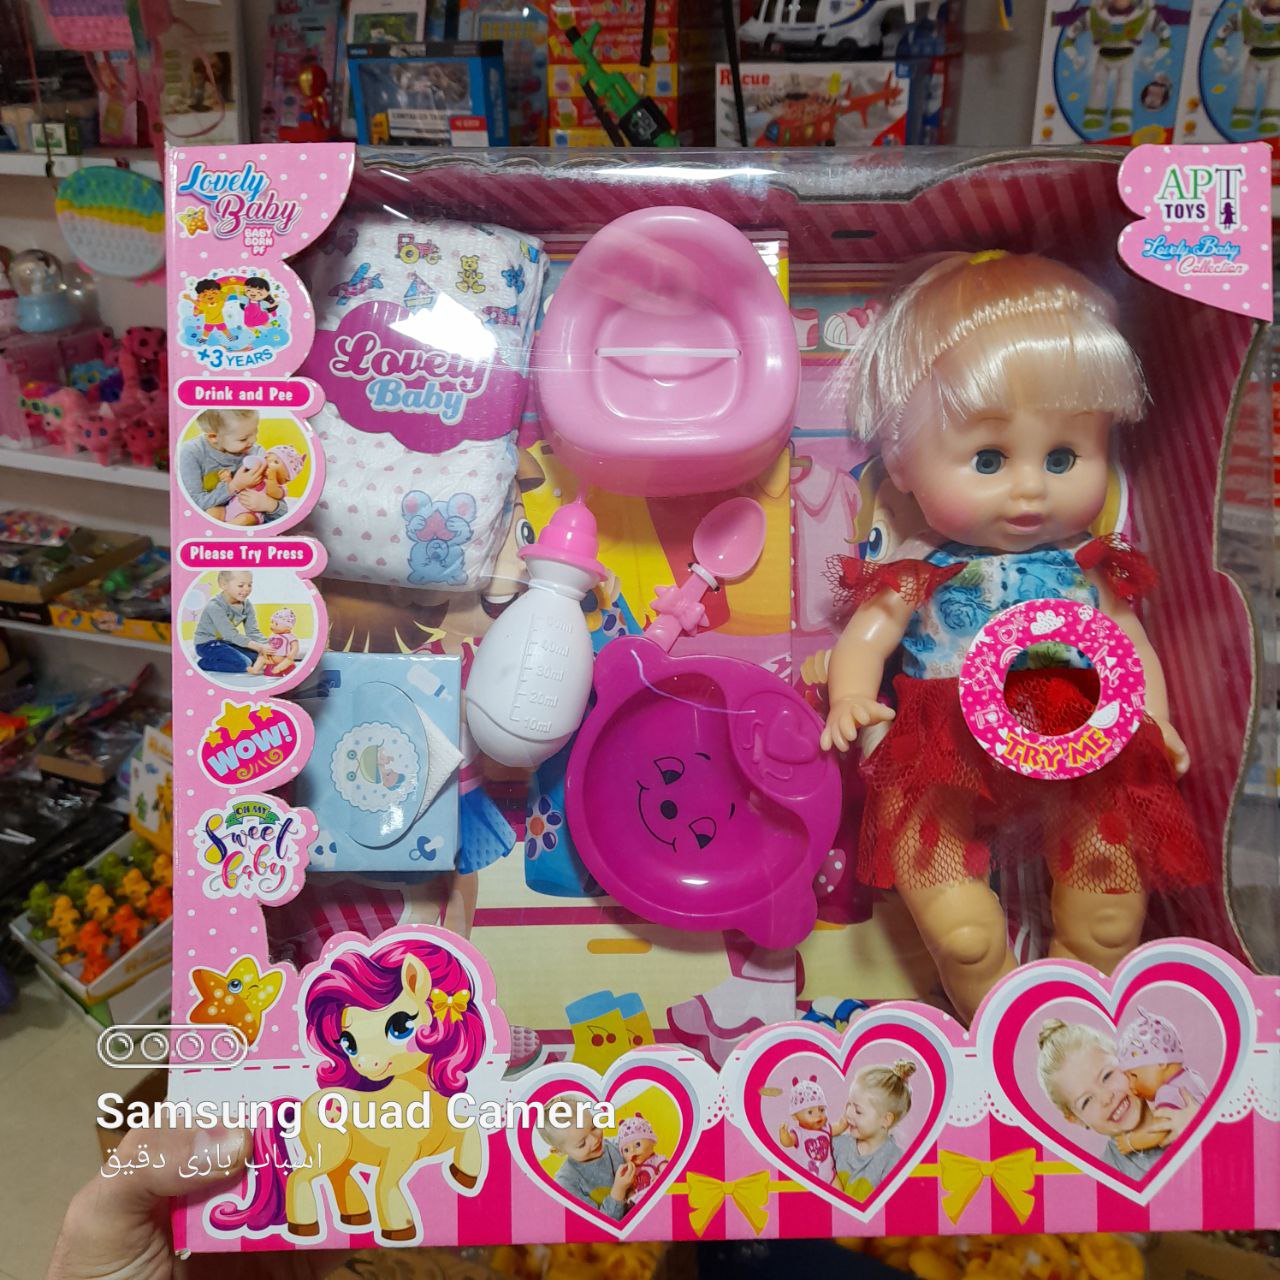   خرید عروسک مای بی بی جیش کن - عروسک پوشکی - طرح دختر - مناسبترین قیمت بازار 